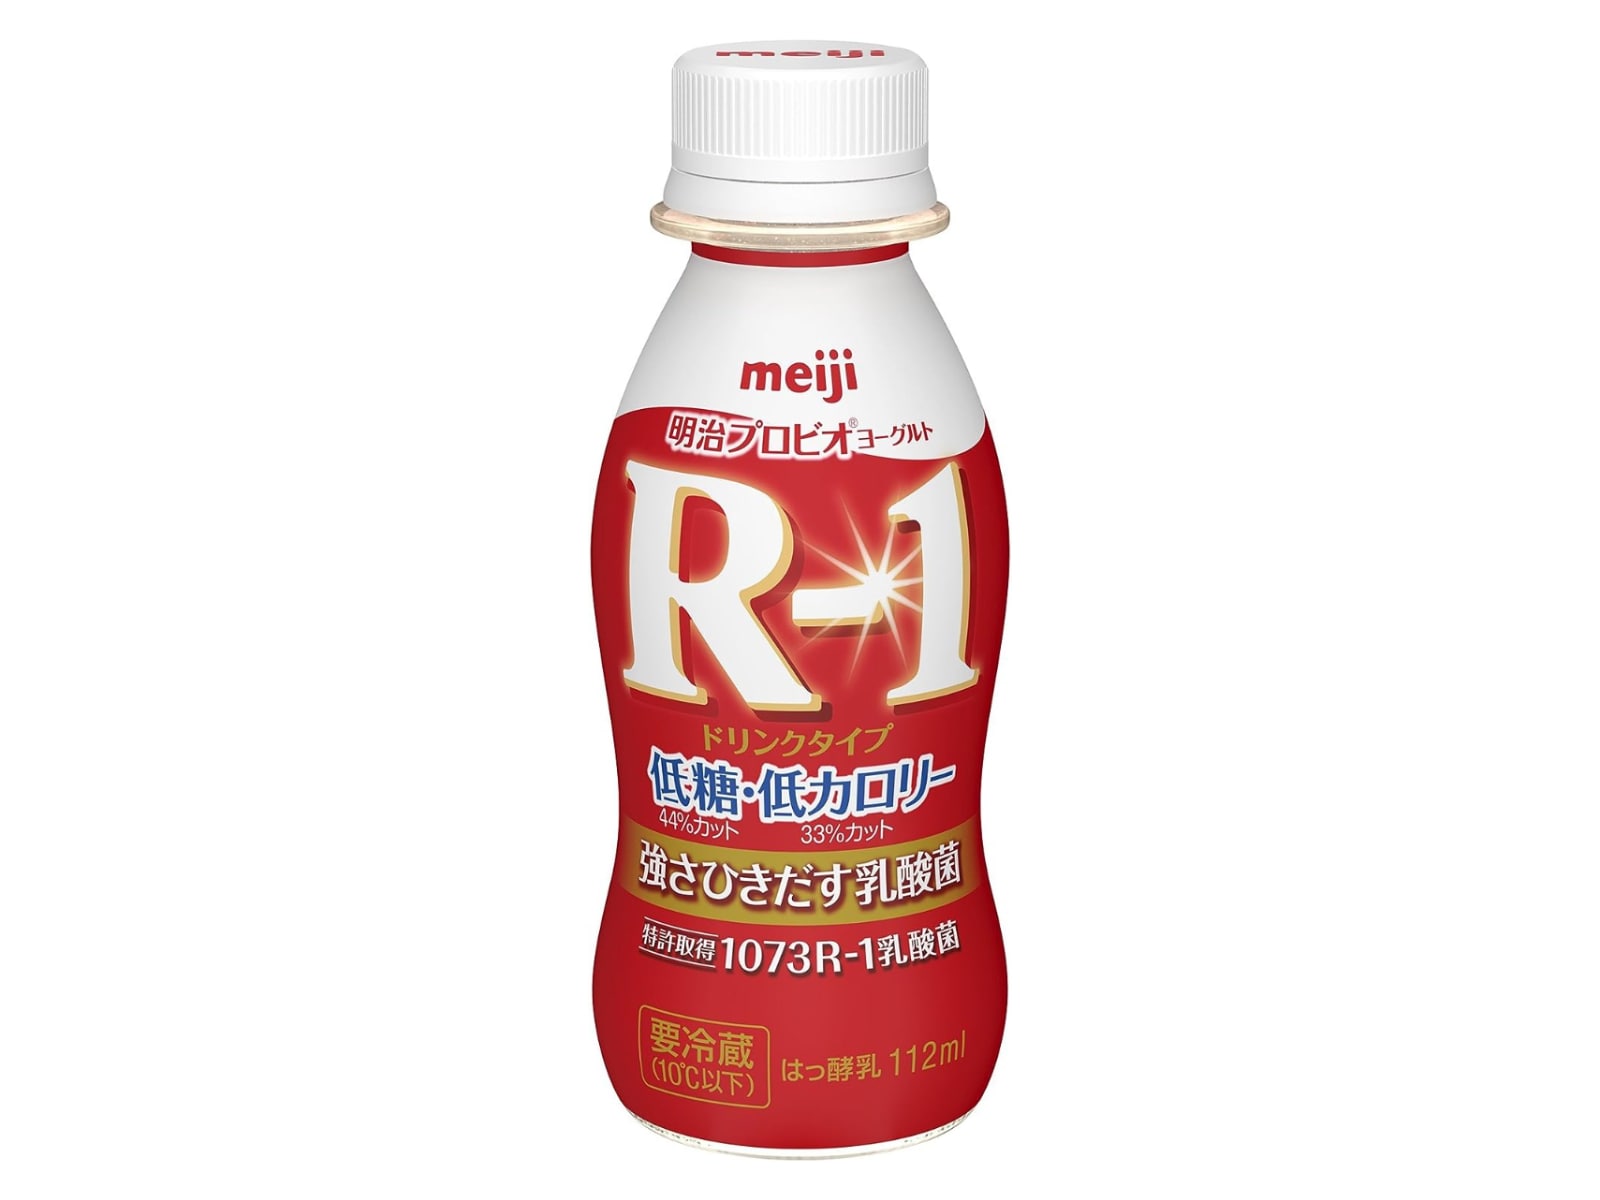 R-1 ドリンクタイプ 低糖・低カロリー